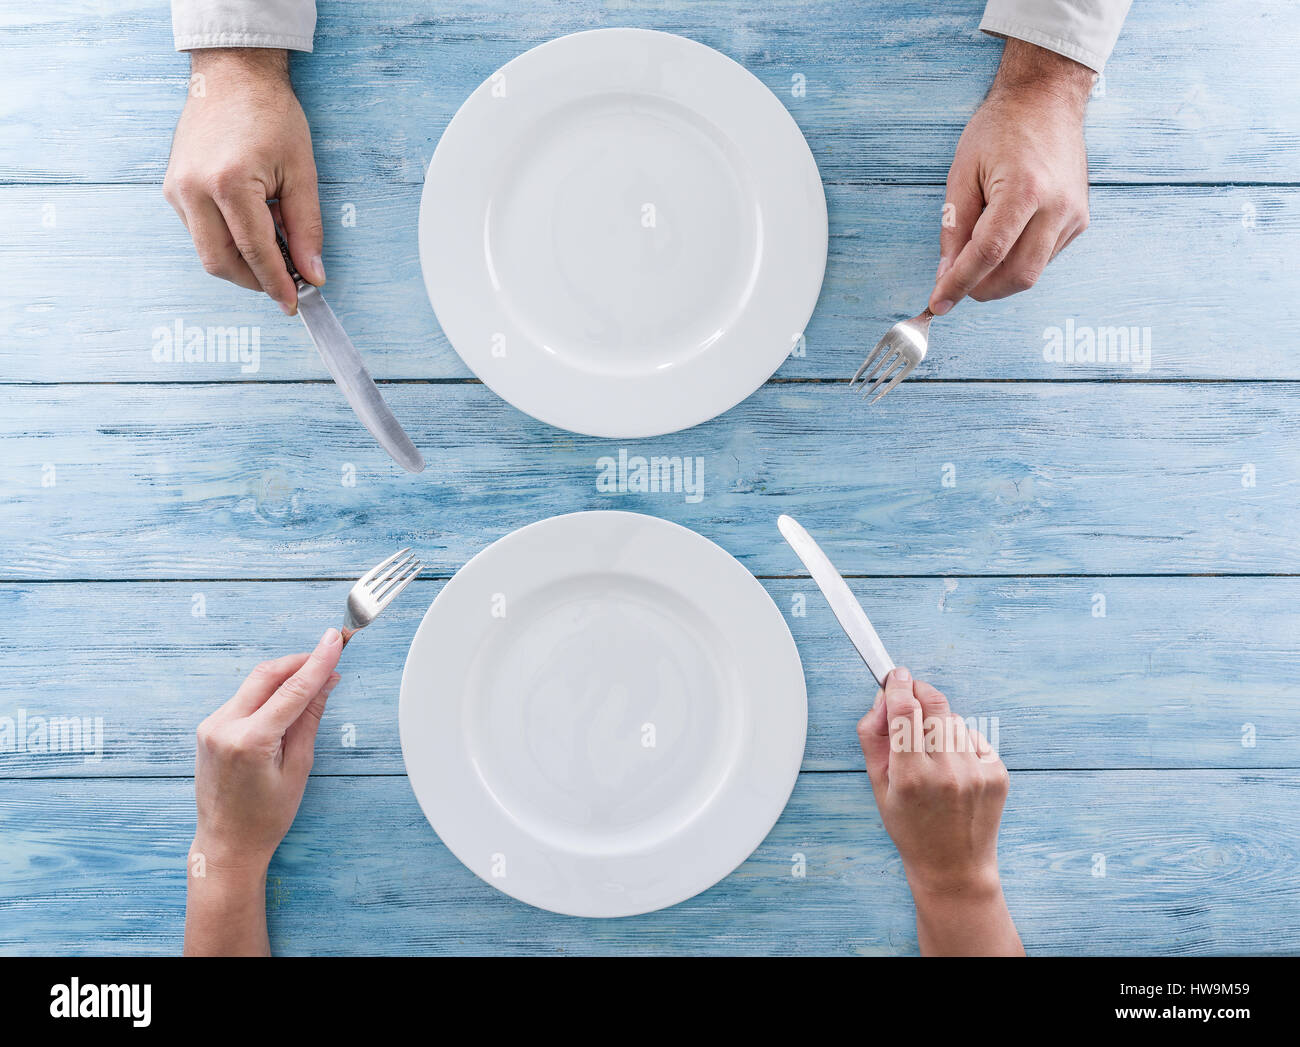 Лишняя тарелка на столе. Пустая тарелка. Руки вид сверху тарелка. Пустая тарелка на столе. Руки с тарелкой сверху.